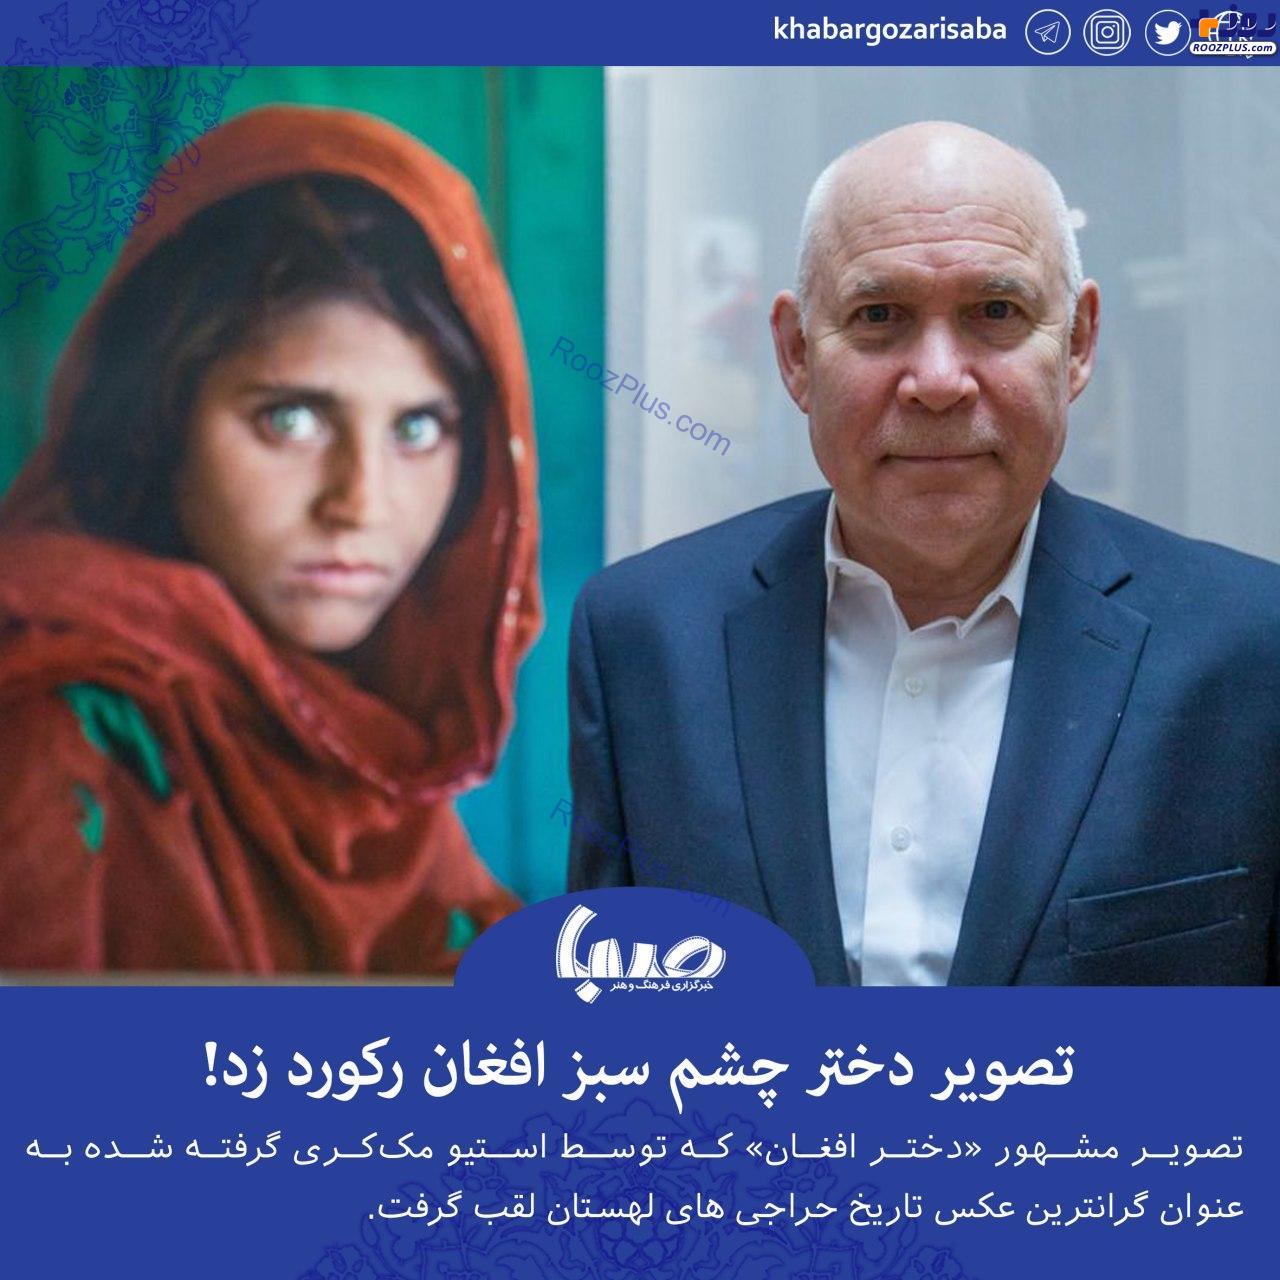 دختر افغان؛ مونالیزای قرن ۲۱ +عکس